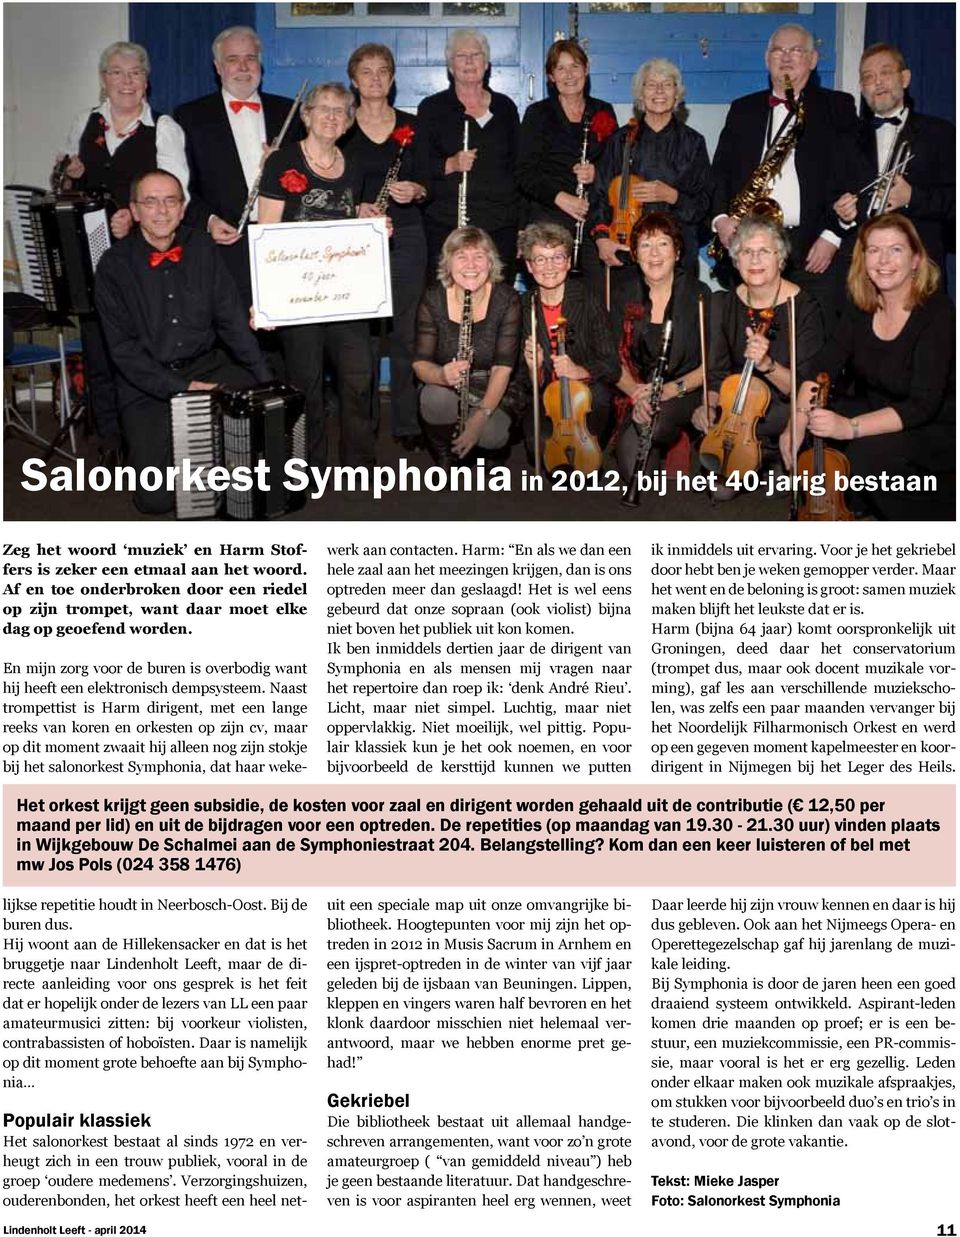 Populair klassiek Het salonorkest bestaat al sinds 1972 en verheugt zich in een trouw publiek, vooral in de groep oudere medemens.